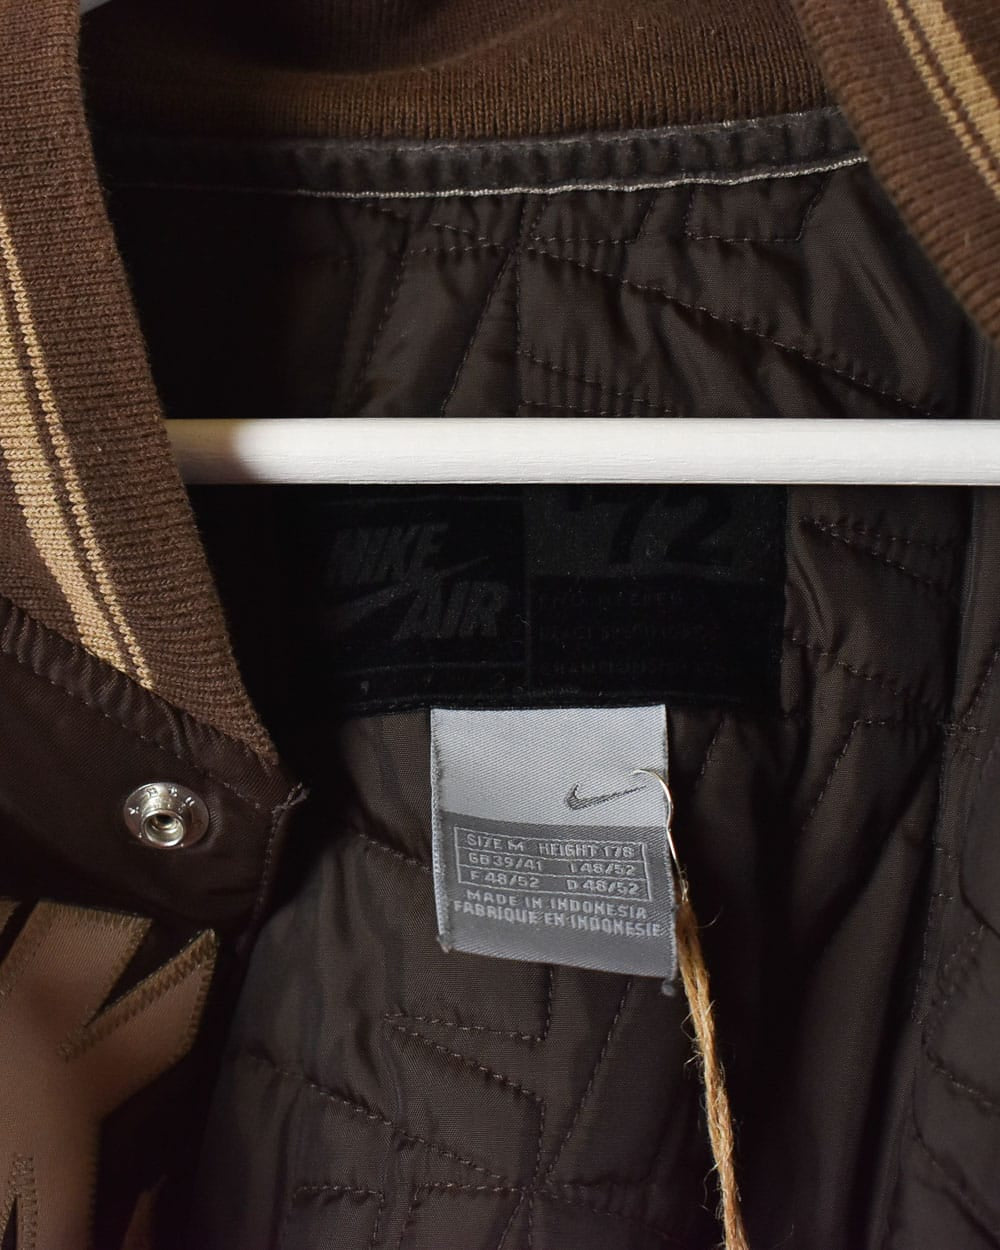 Brown Nike Air Varsity Jacket - Medium